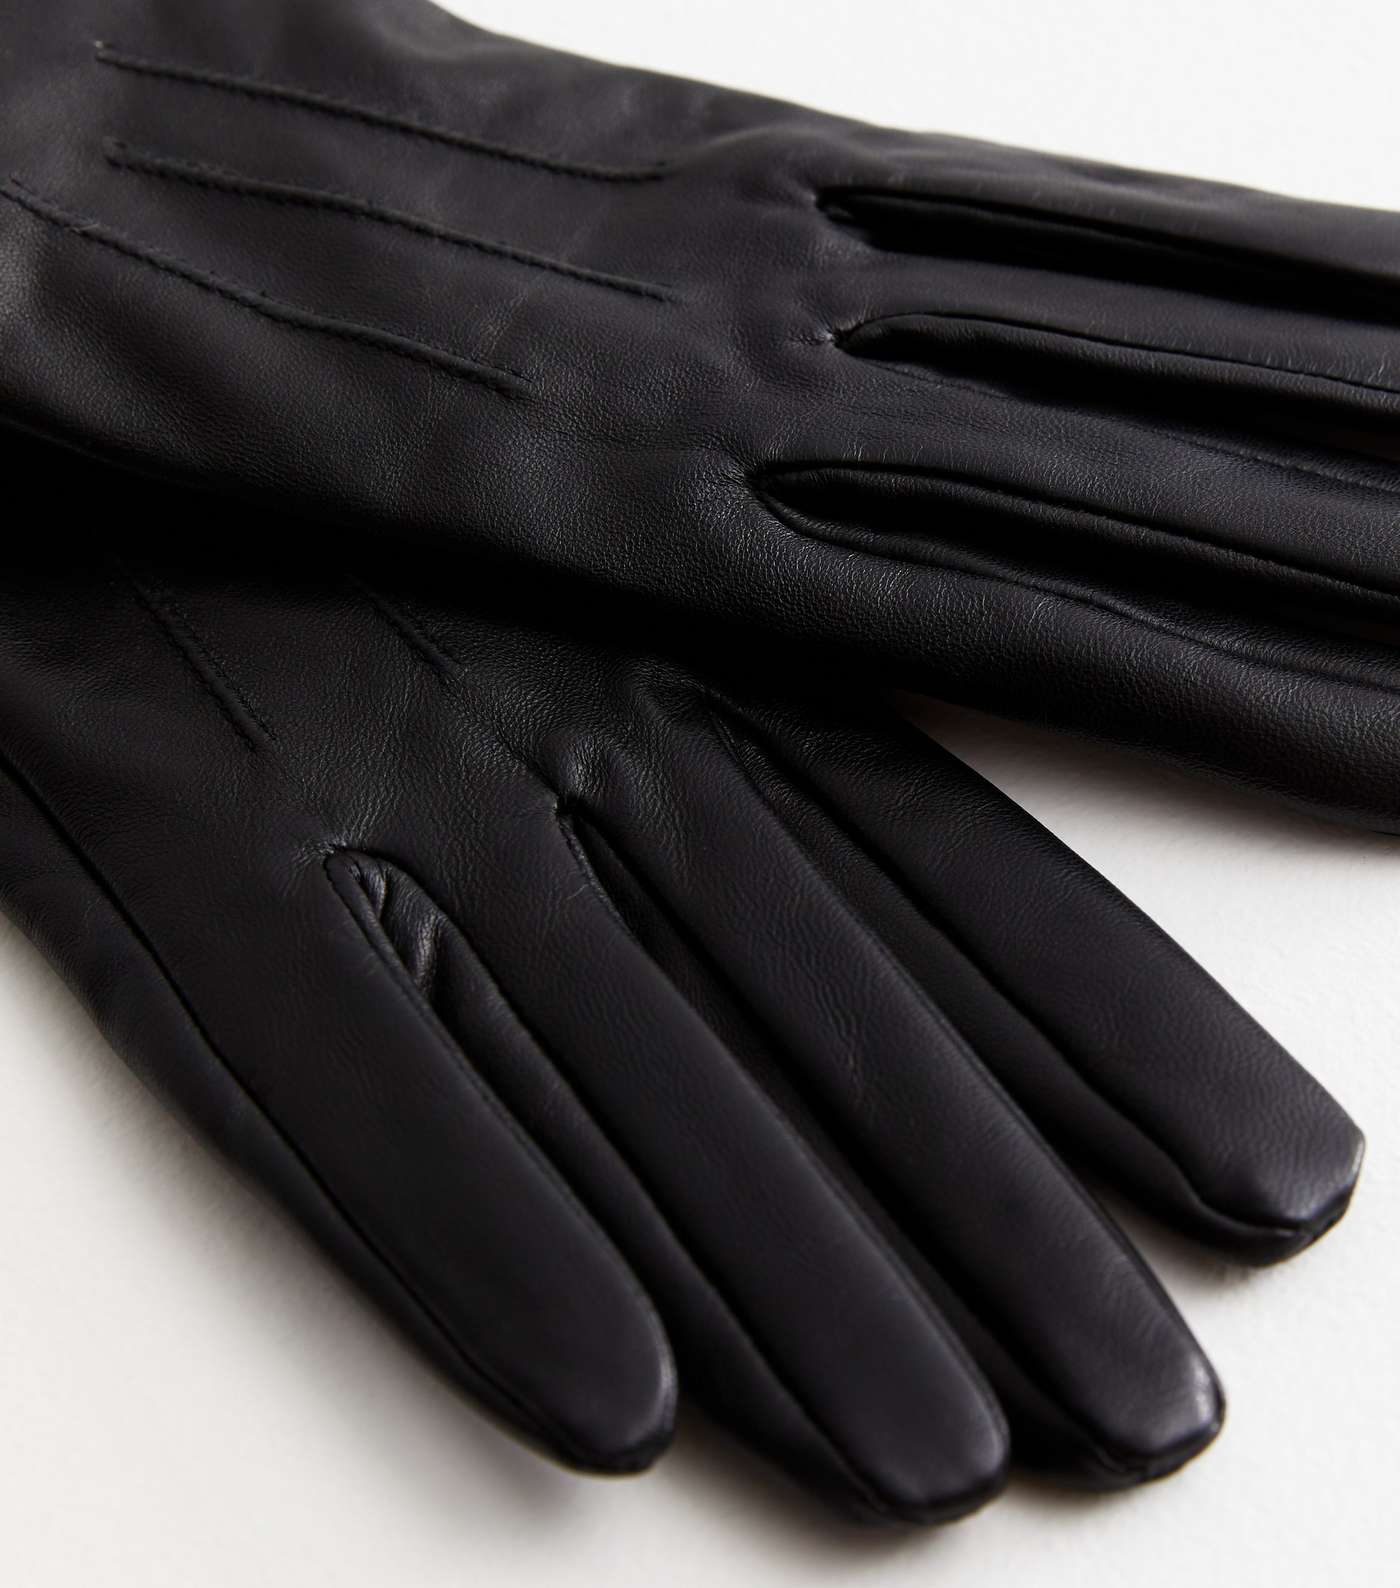 Black Leather Gloves Image 2